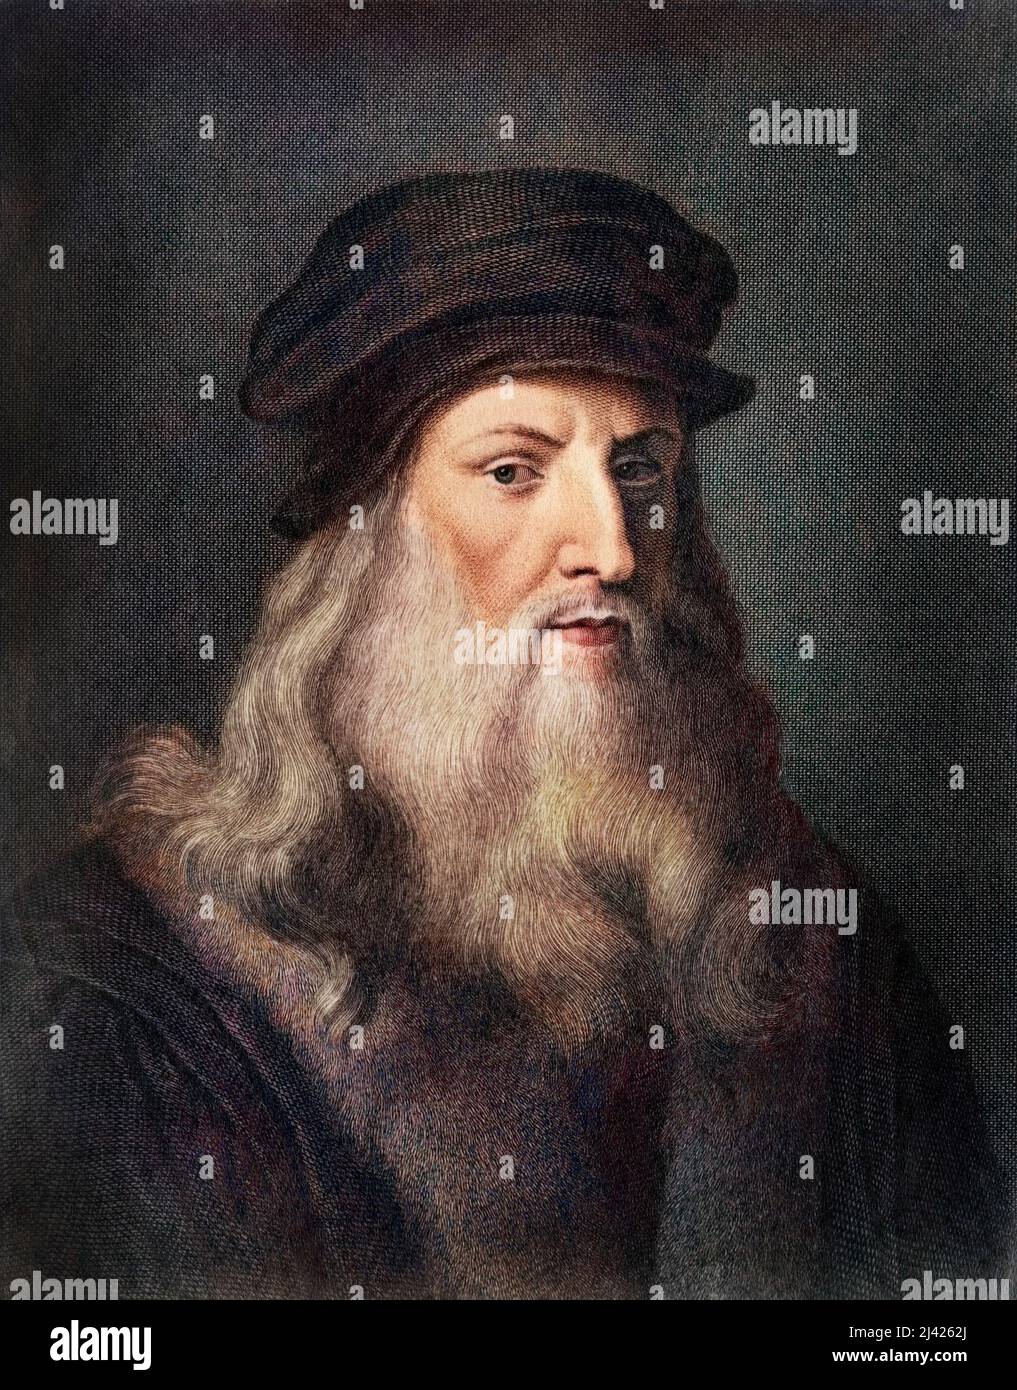 Portrait de Leonardo da Vinci (Leonard de Vinci, 1452-1519). Gravure. Stock Photo